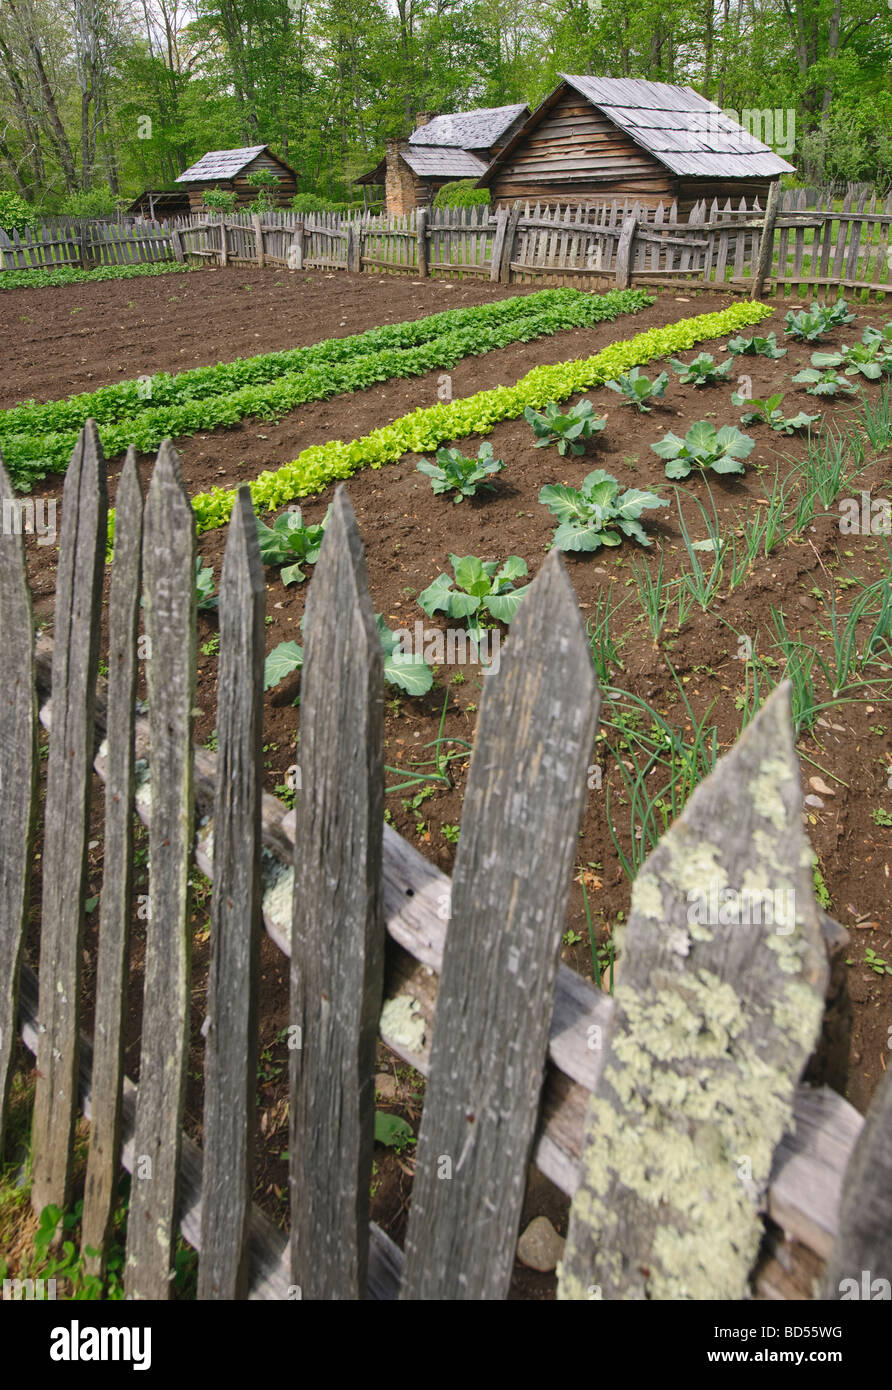 A vegetable garden at Smoky Mountain National Park Stock Photo